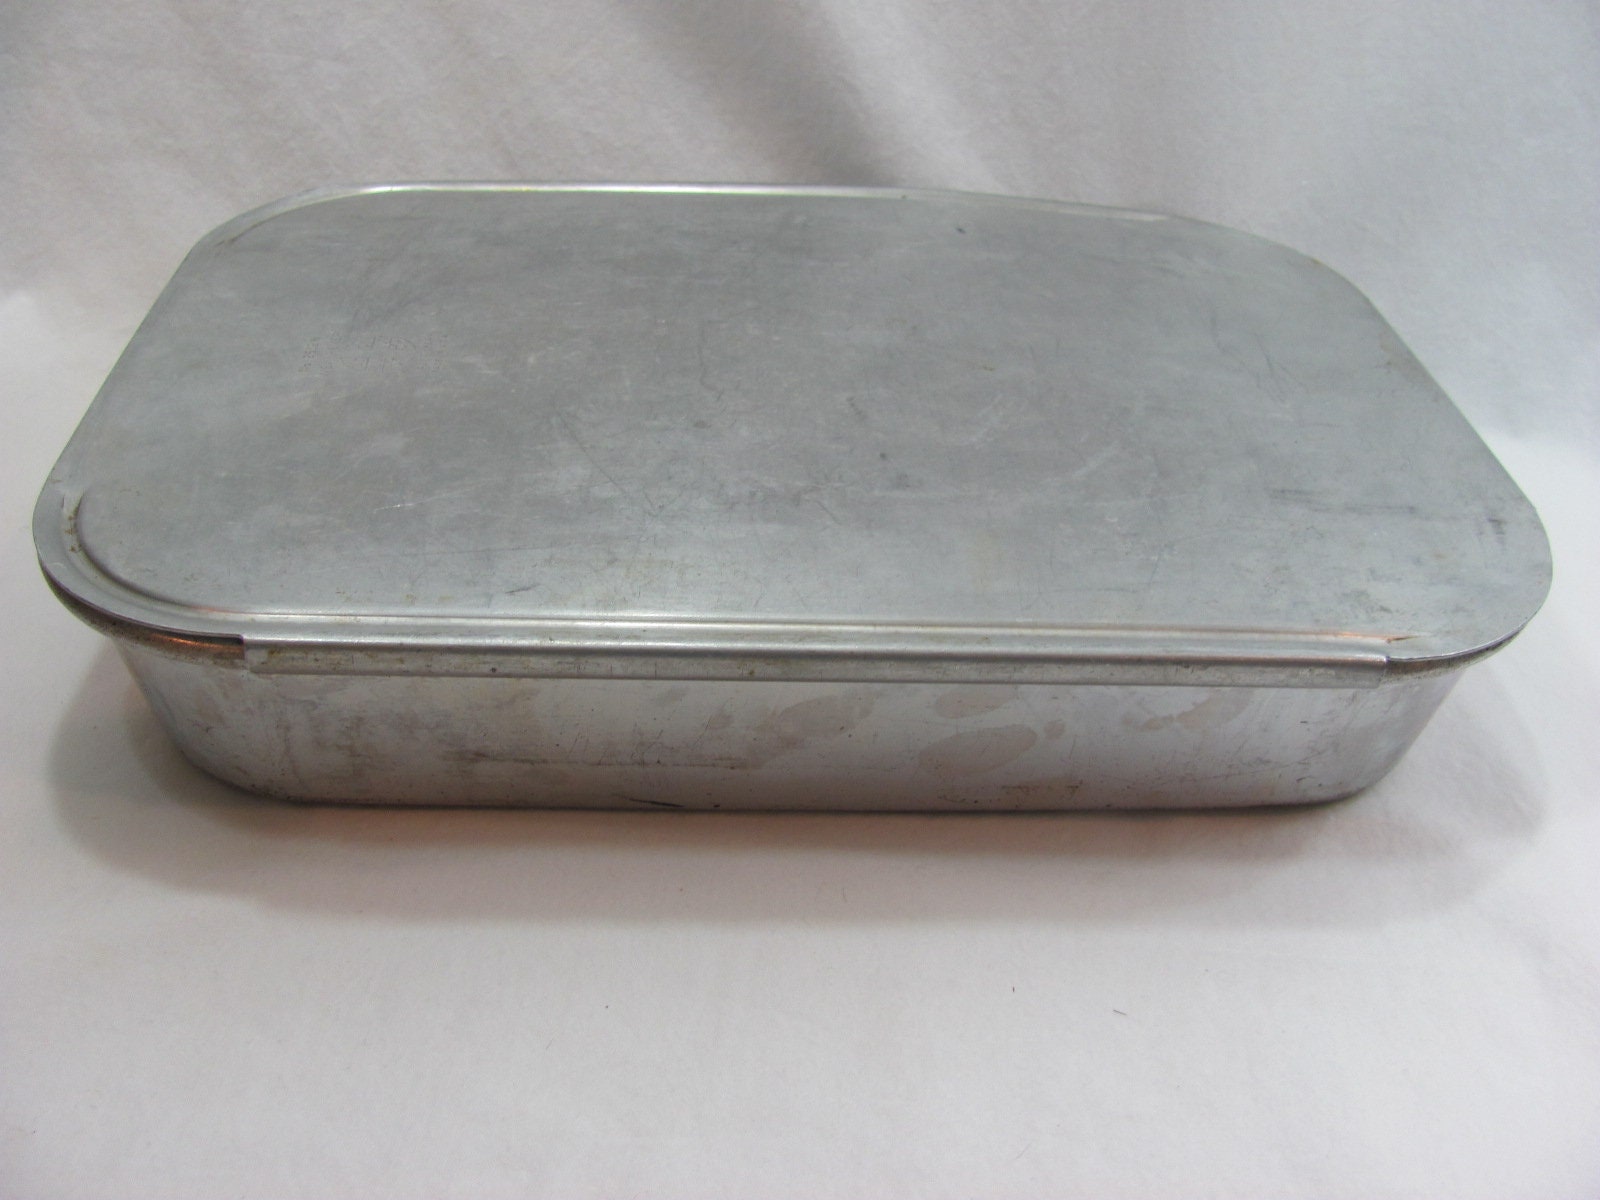 VTG Wear-Ever Half Circle No. 801 Aluminum Baking Pan Set of 2